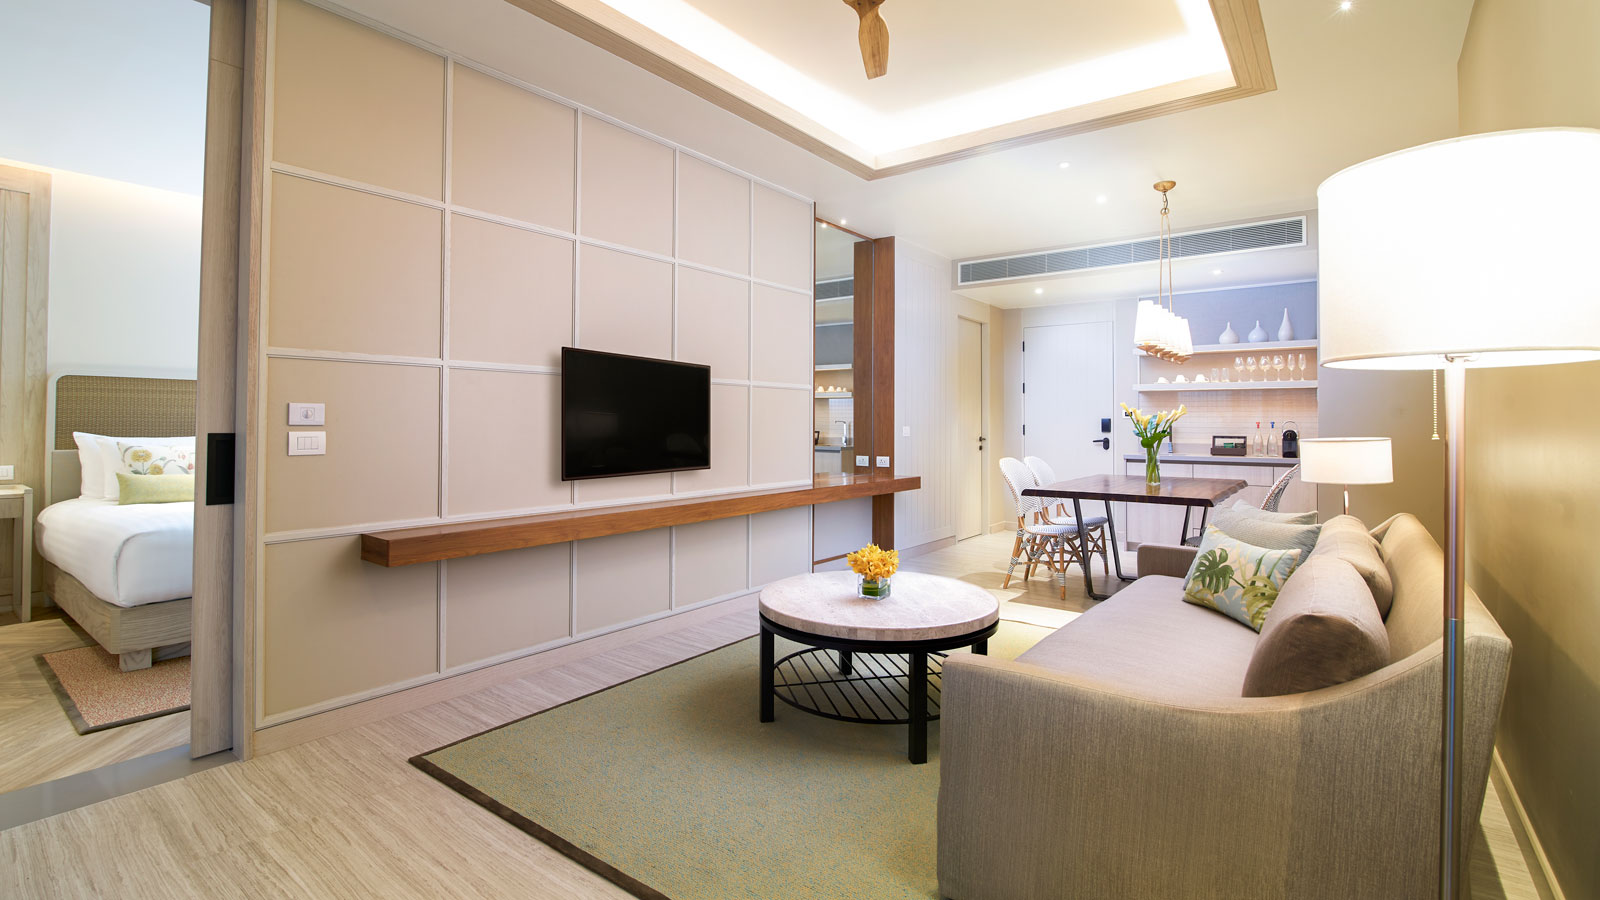 Flat-screen TV in living room in Amari Suite - Amari Pattaya